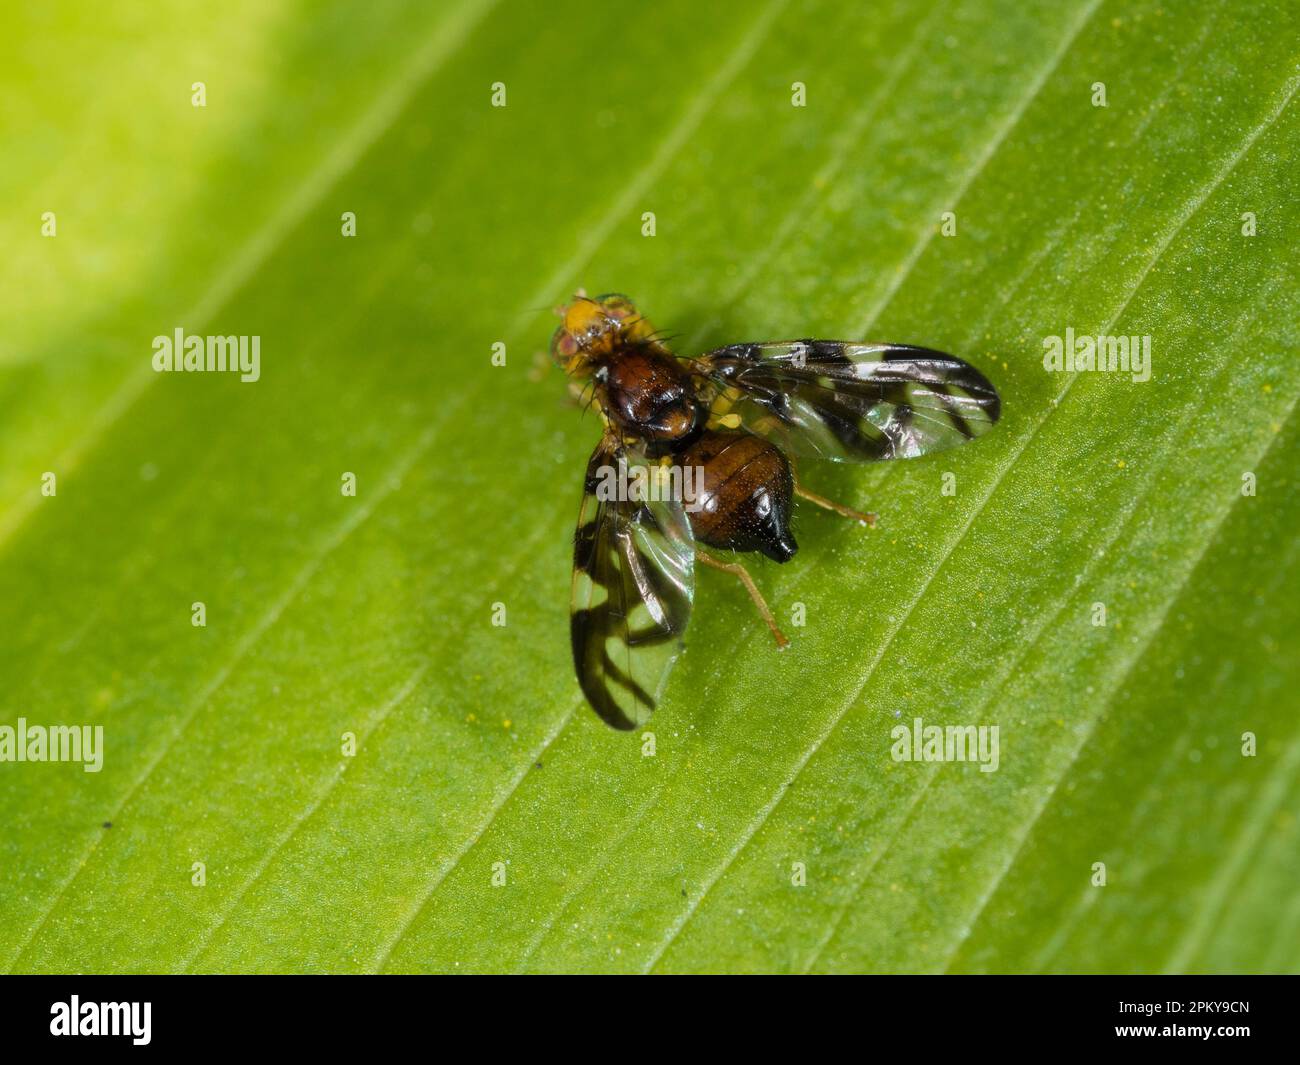 Addome bulboso e ali a motivi neri della mosca britannica del sedano, Euleia heraclei, una specie di minatore di foglie Foto Stock